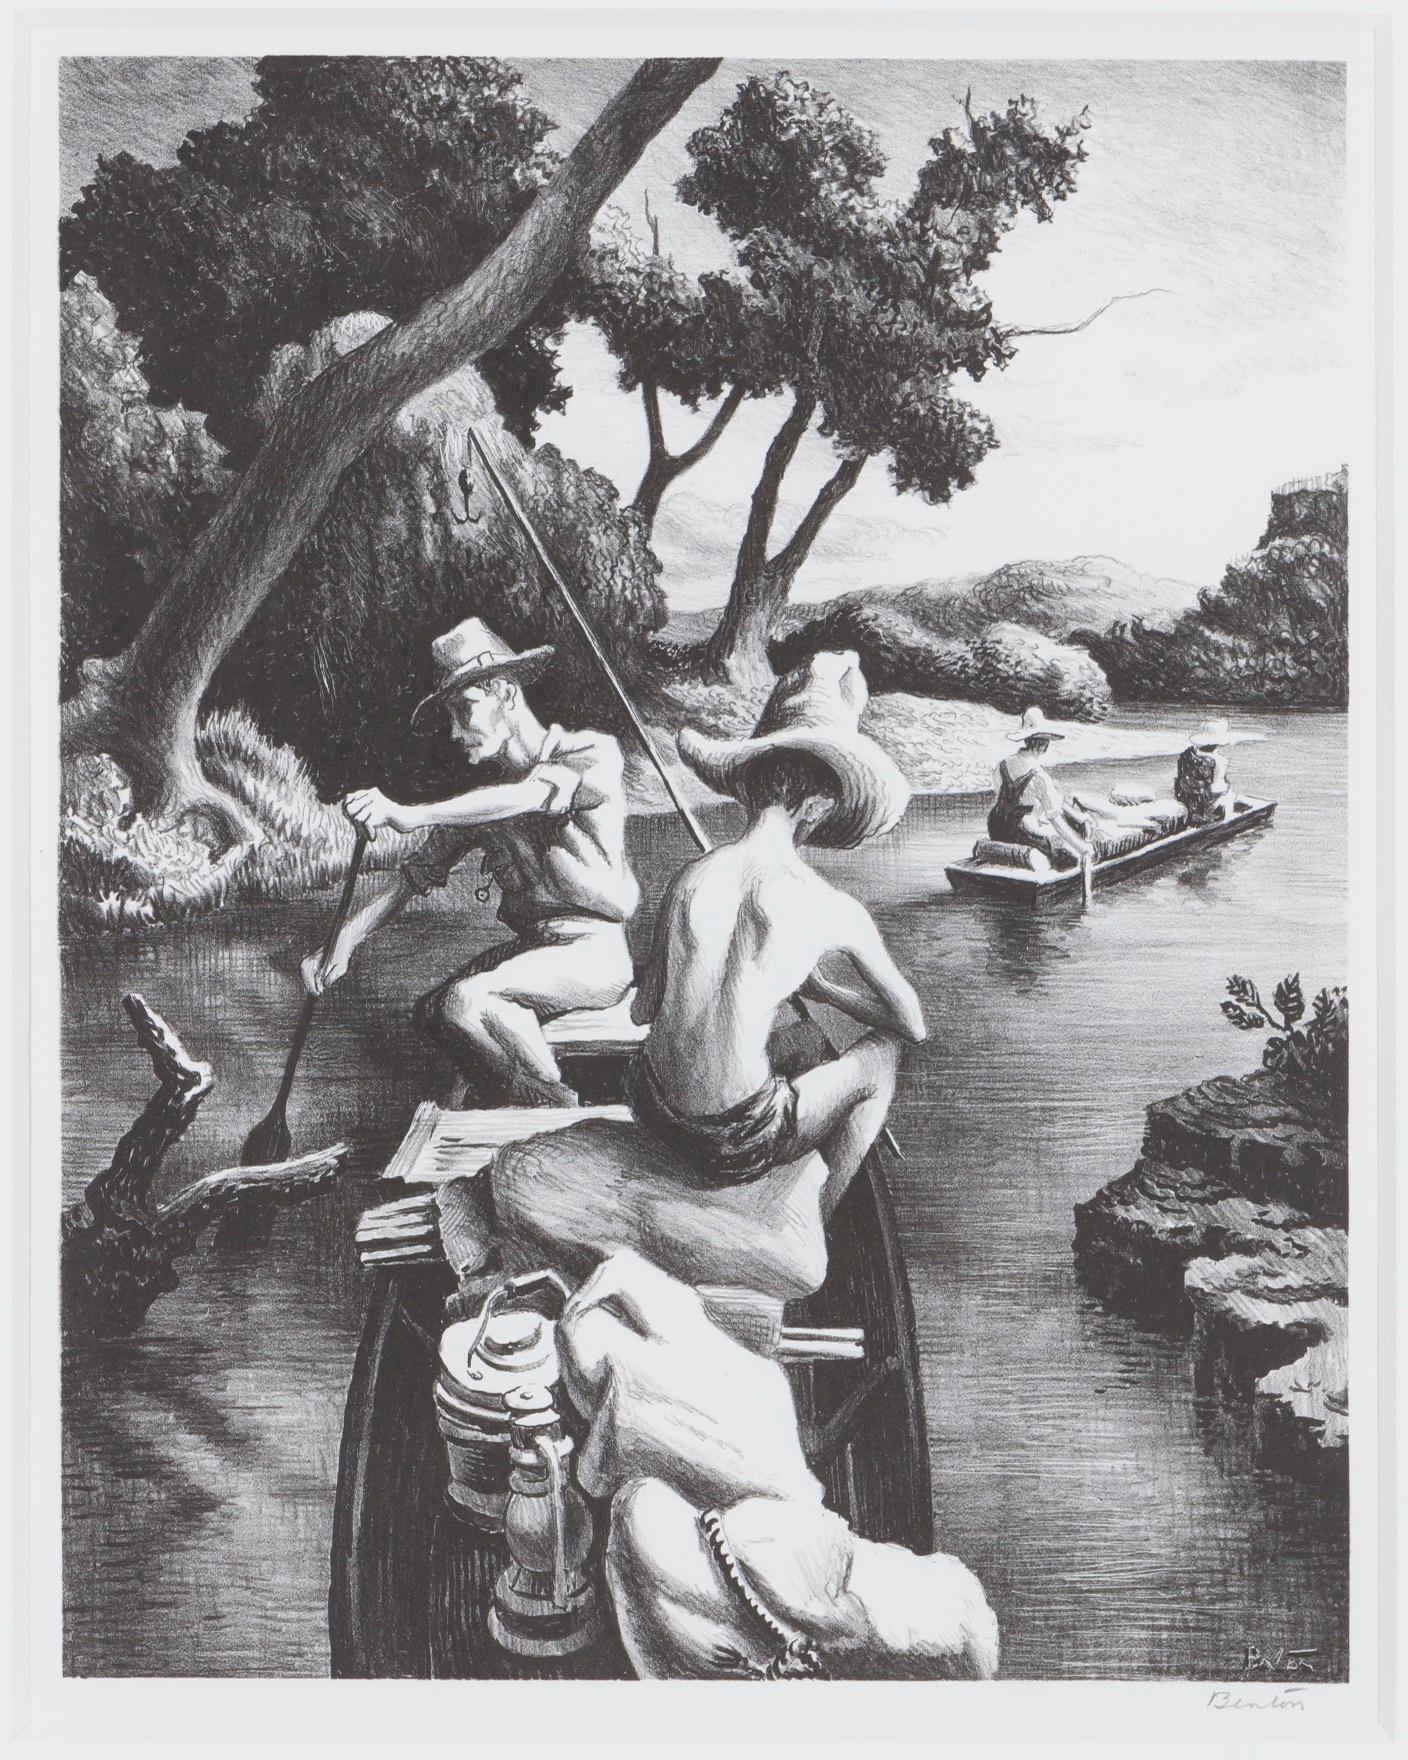 En bas de la rivière - Print de Thomas Hart Benton